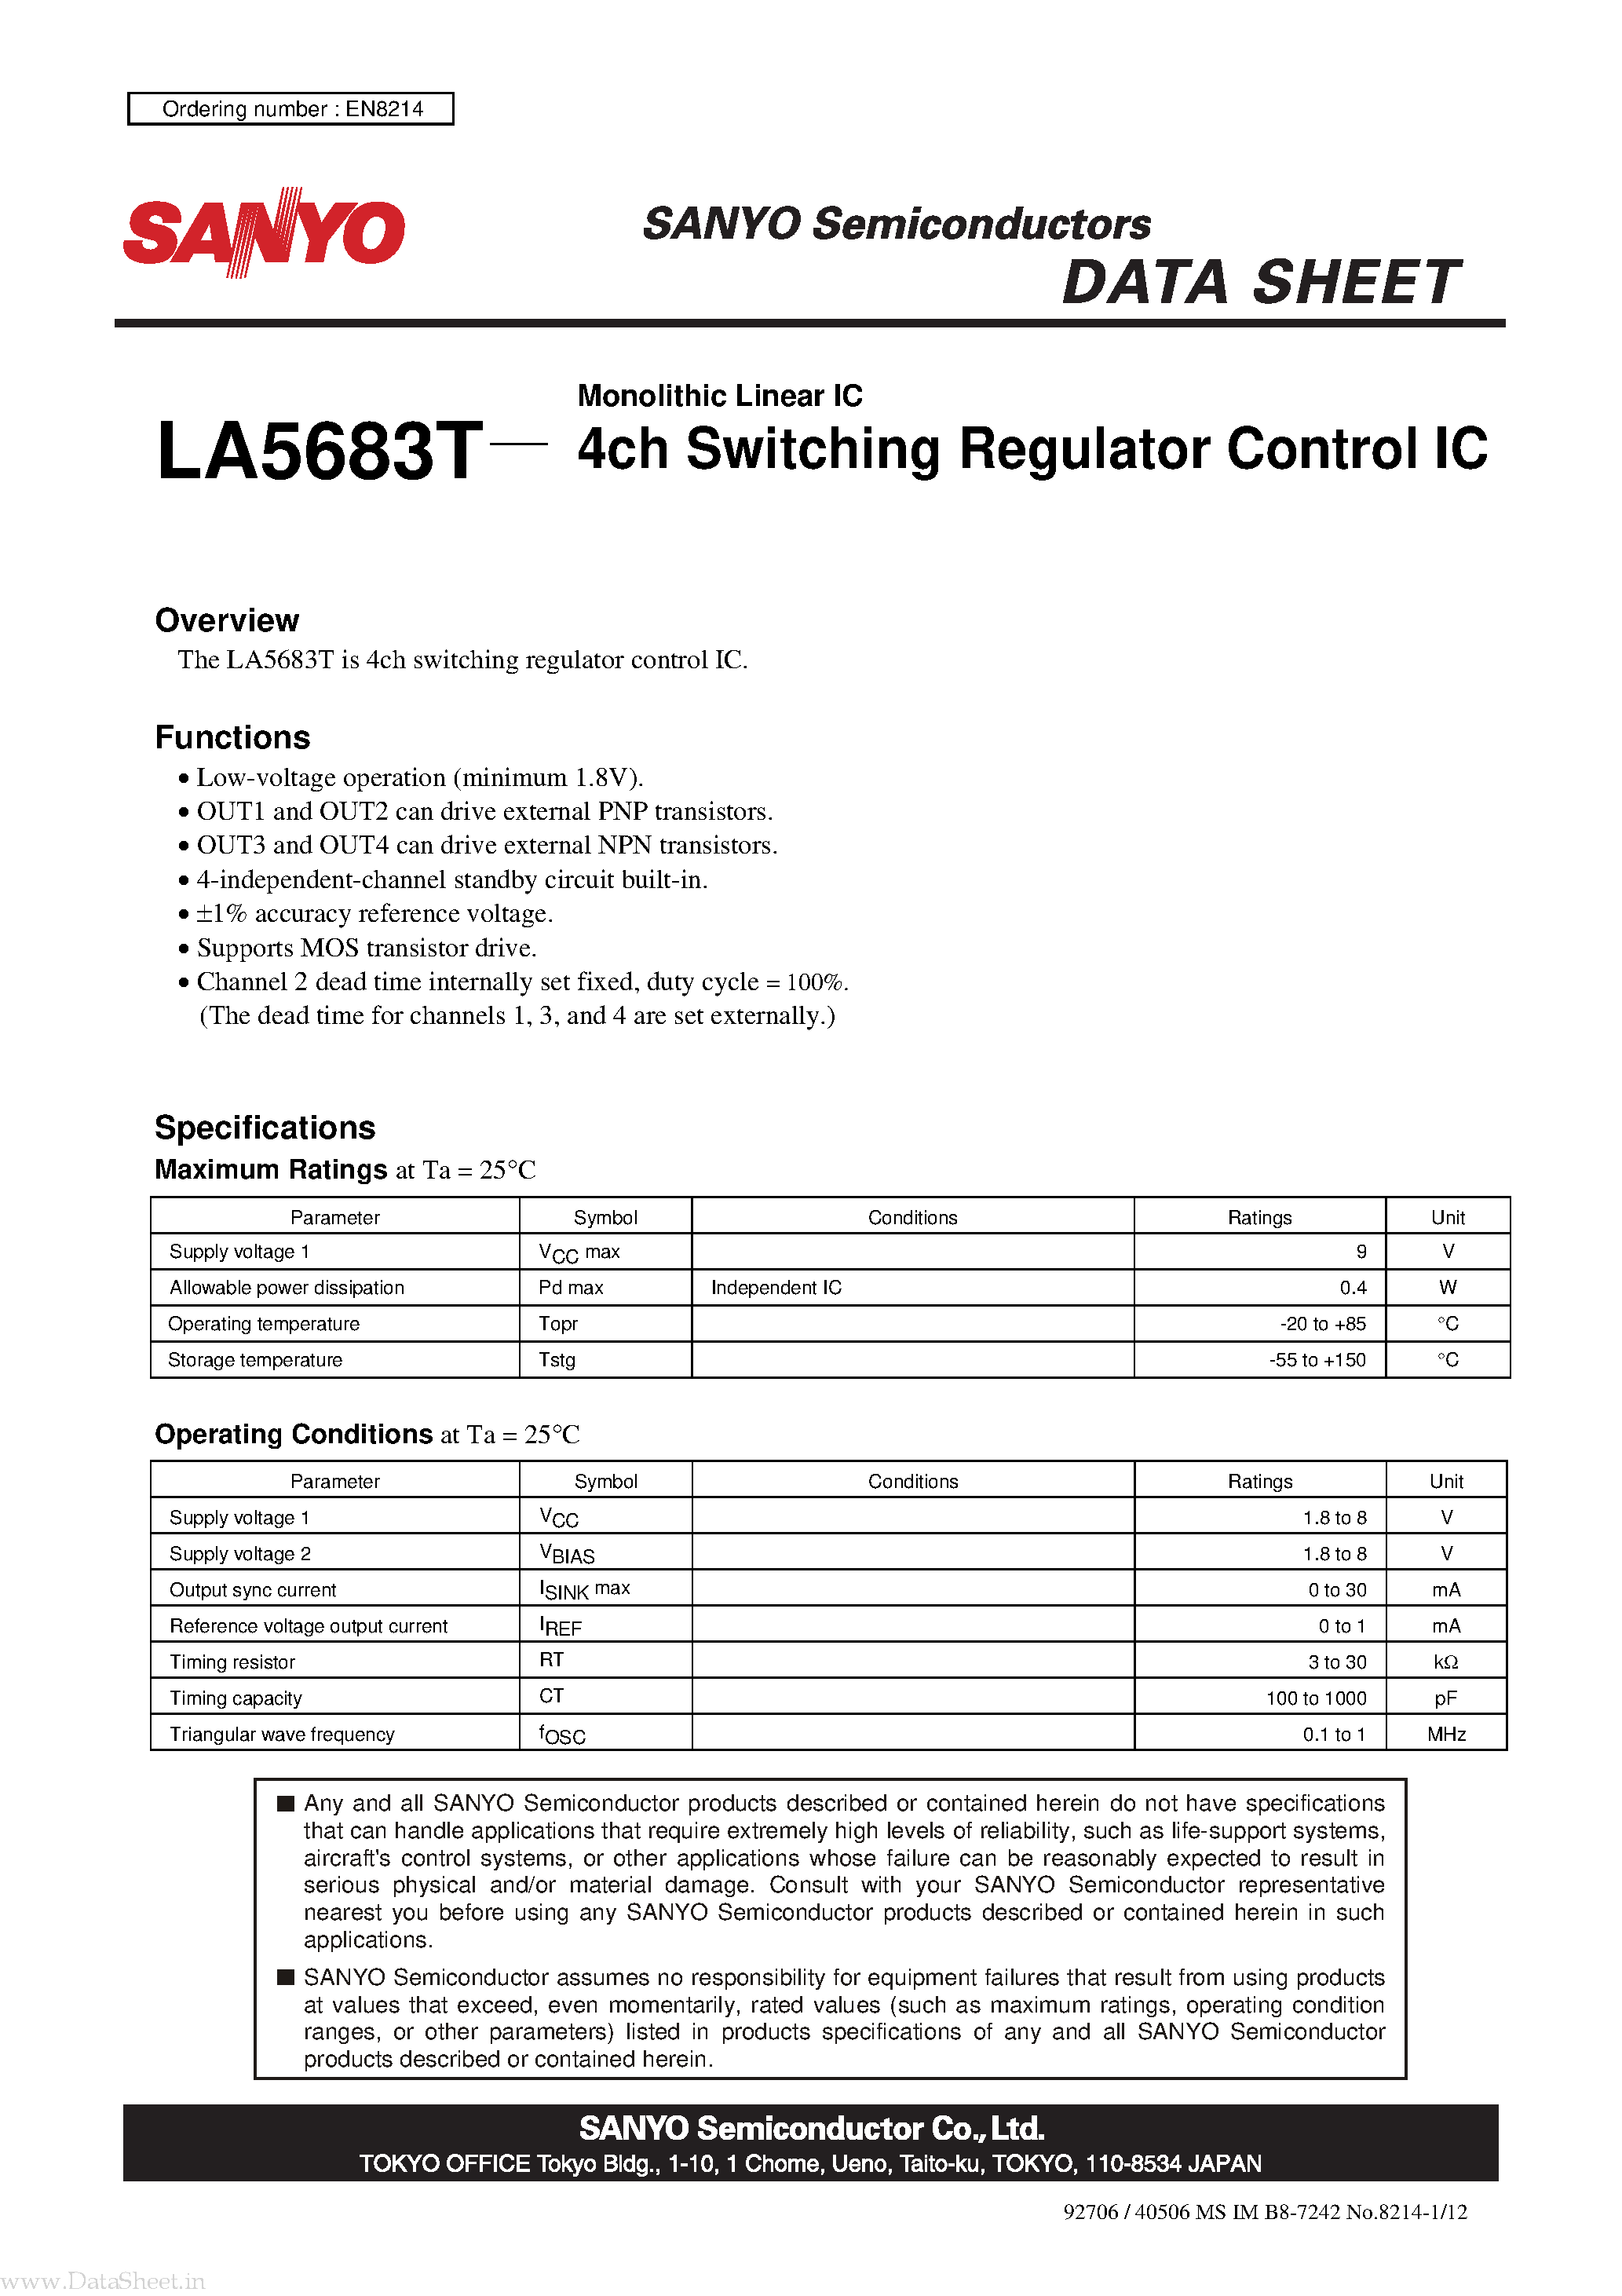 Даташит LA5683T-Monolithic Linear IC 4ch Switching Regulator Control IC страница 1